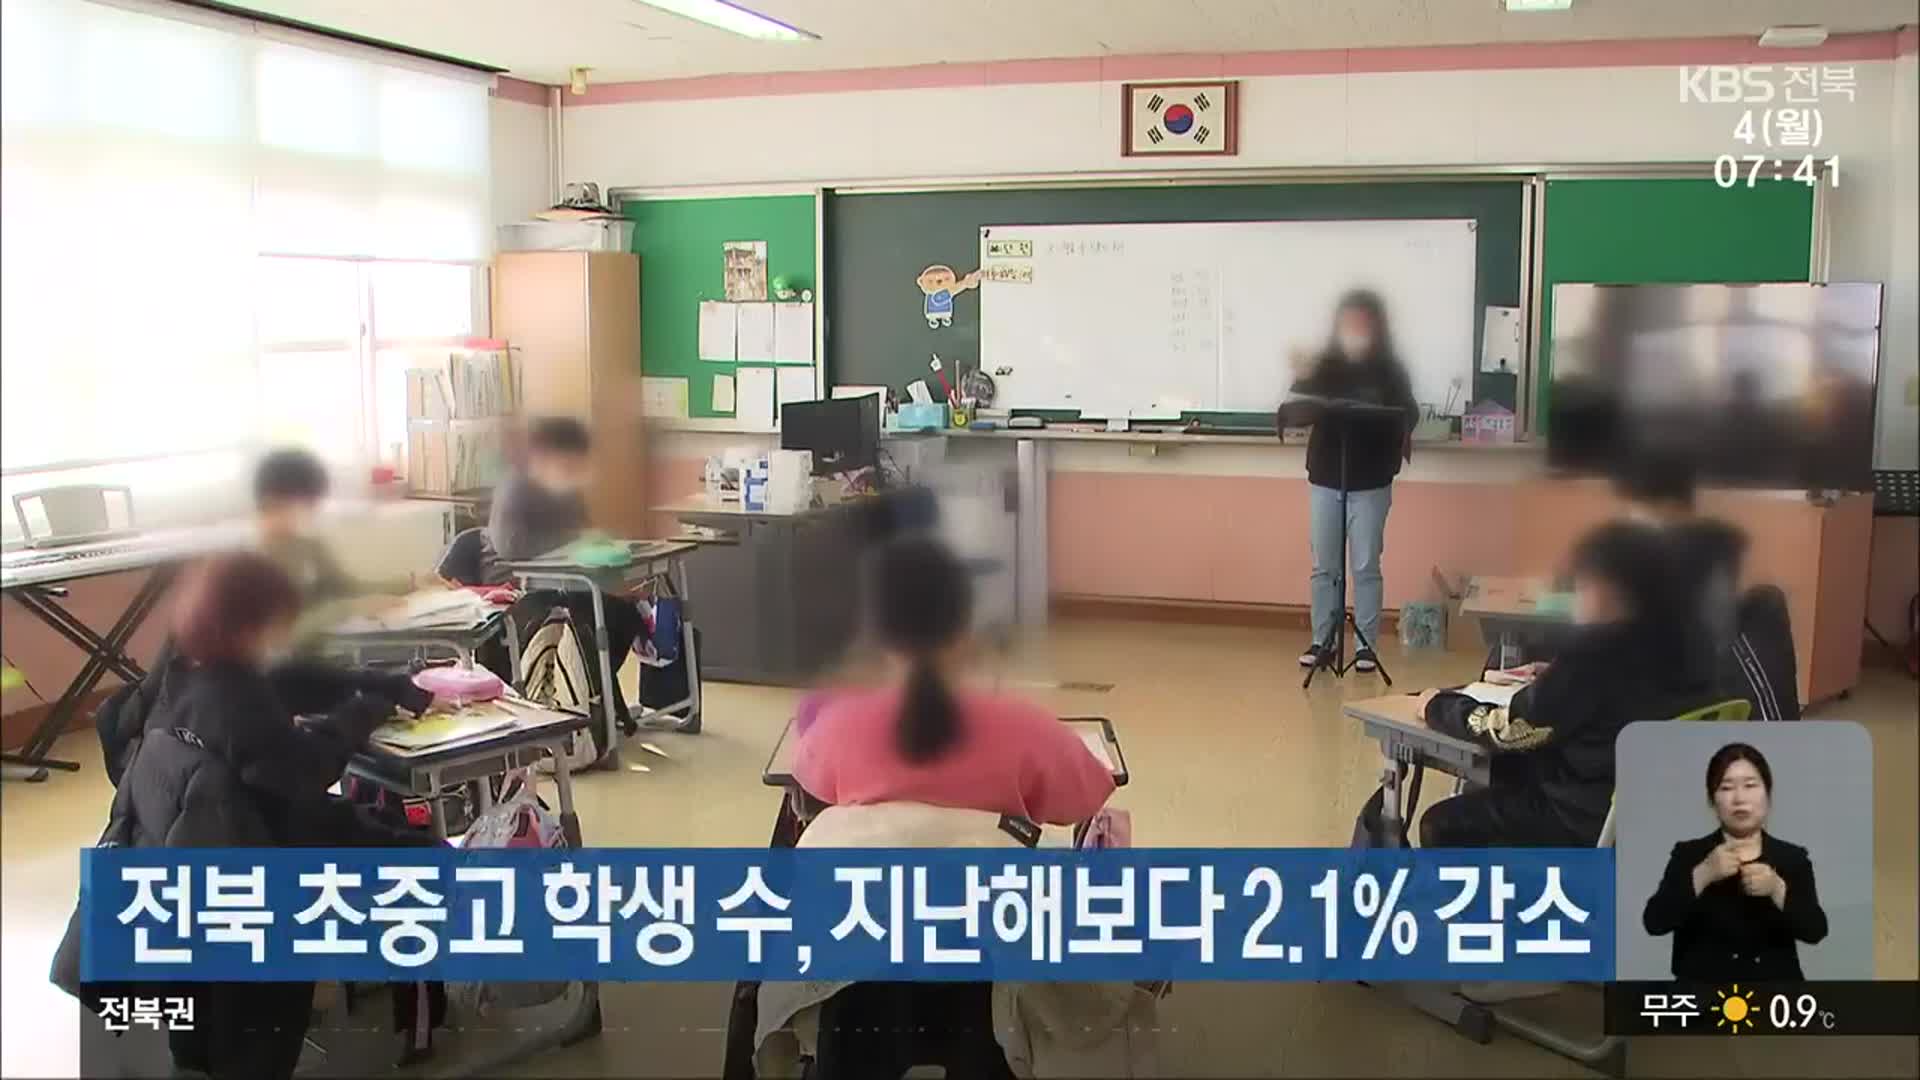 전북 초중고 학생 수, 지난해보다 2.1% 감소